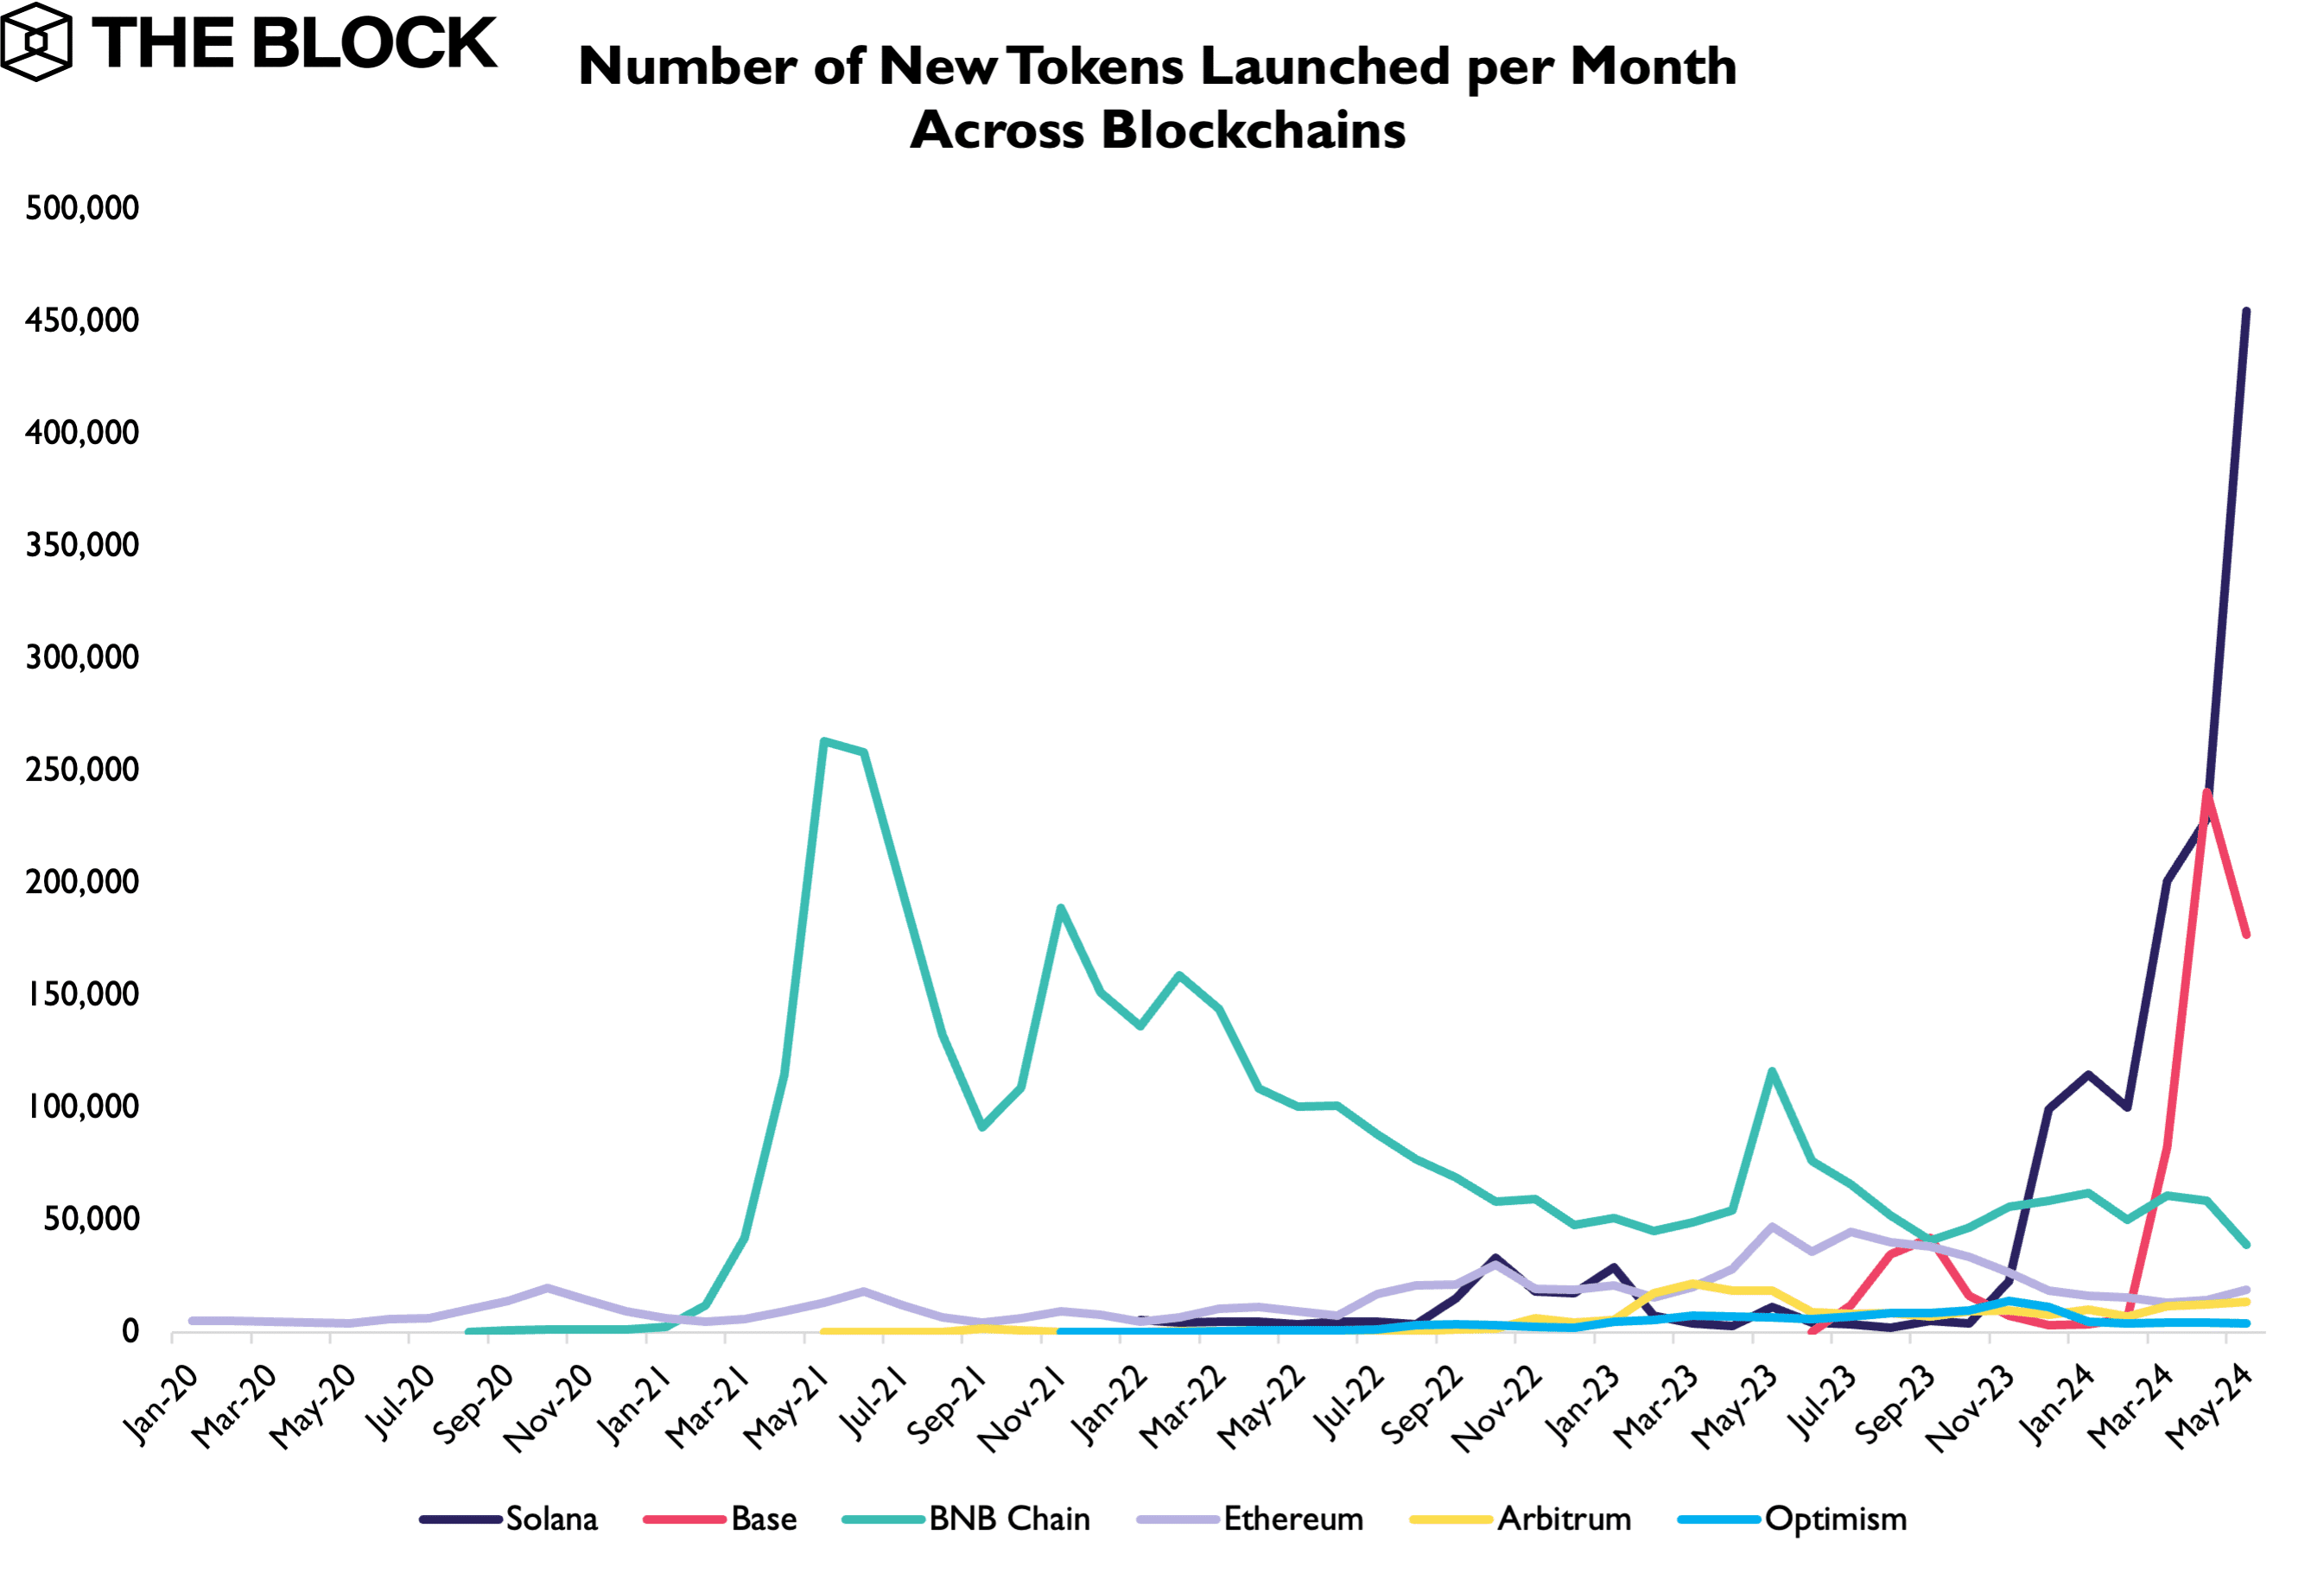 En mayo, en la red blockchain de Solana fueron creados 455.000 nuevos tokens, una cifra que supera con creces a otras redes importantes. 